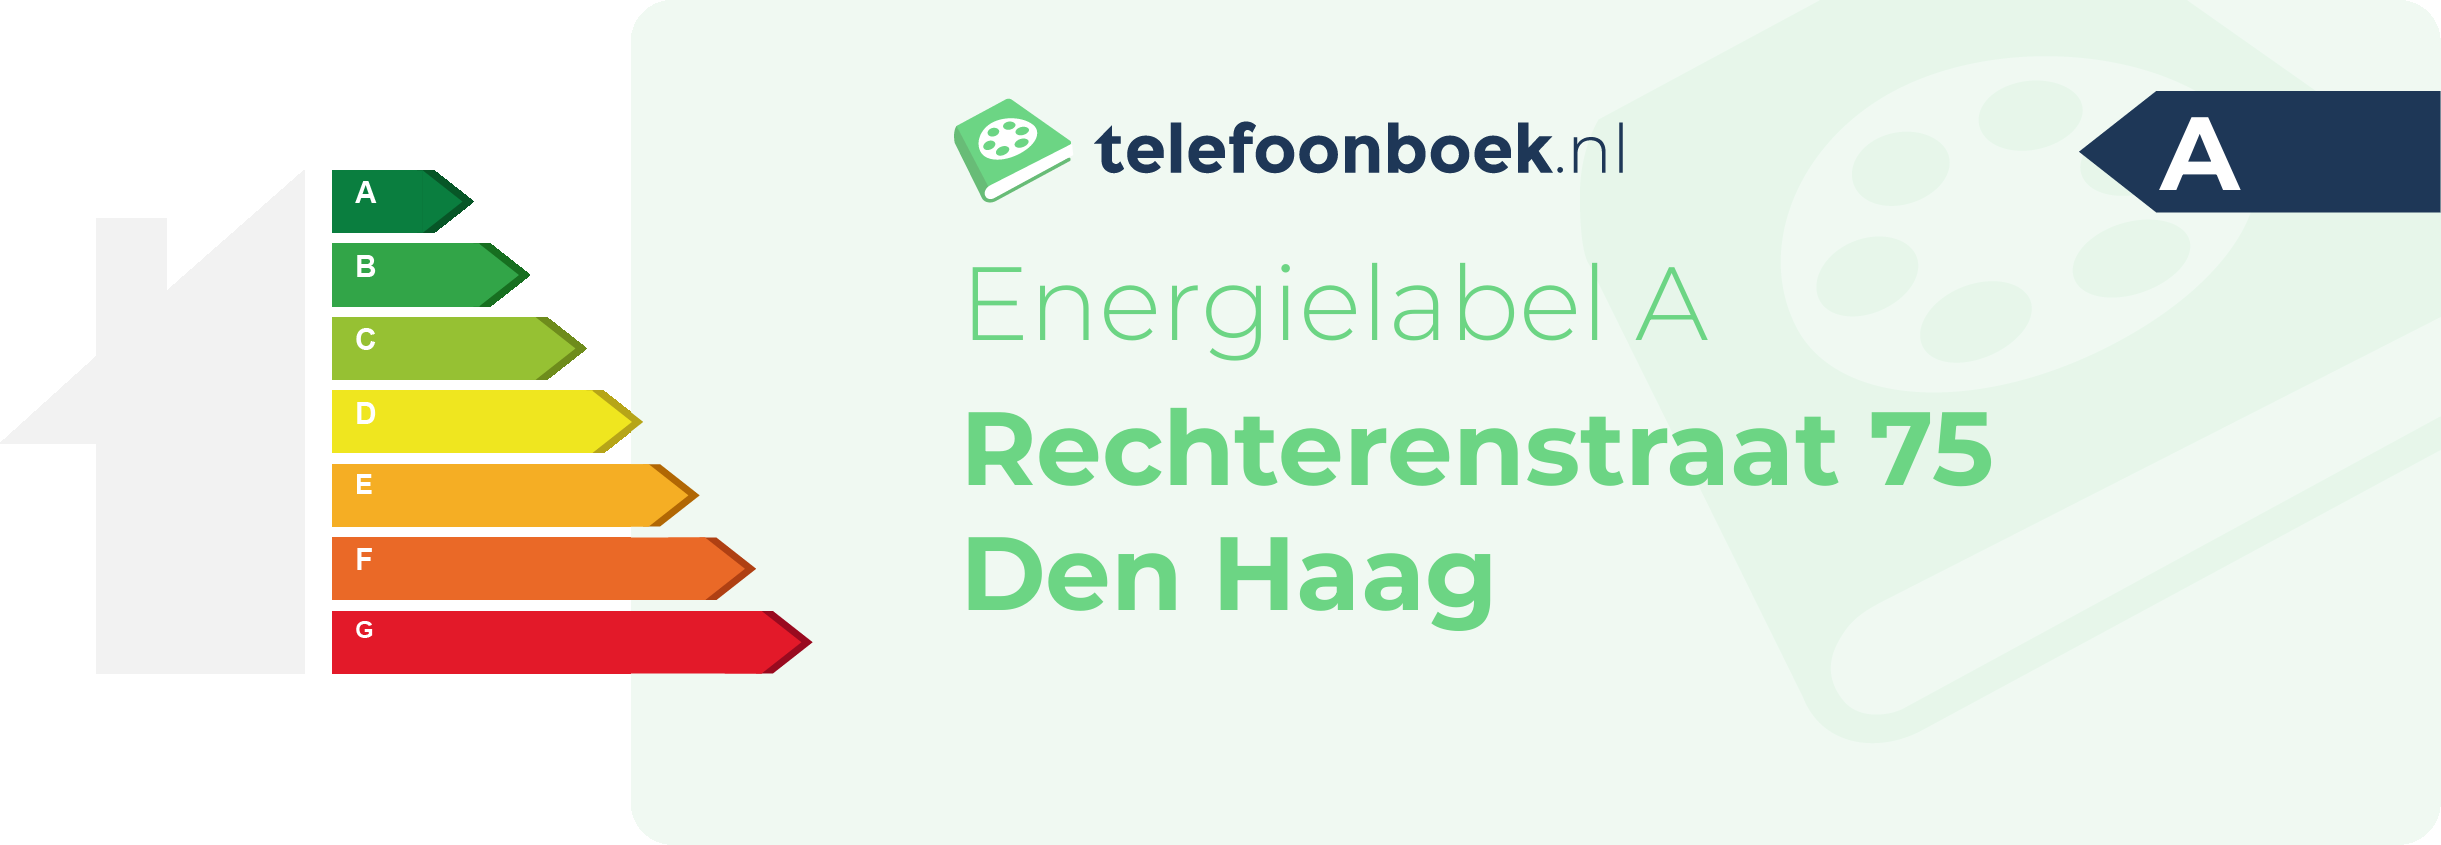 Energielabel Rechterenstraat 75 Den Haag